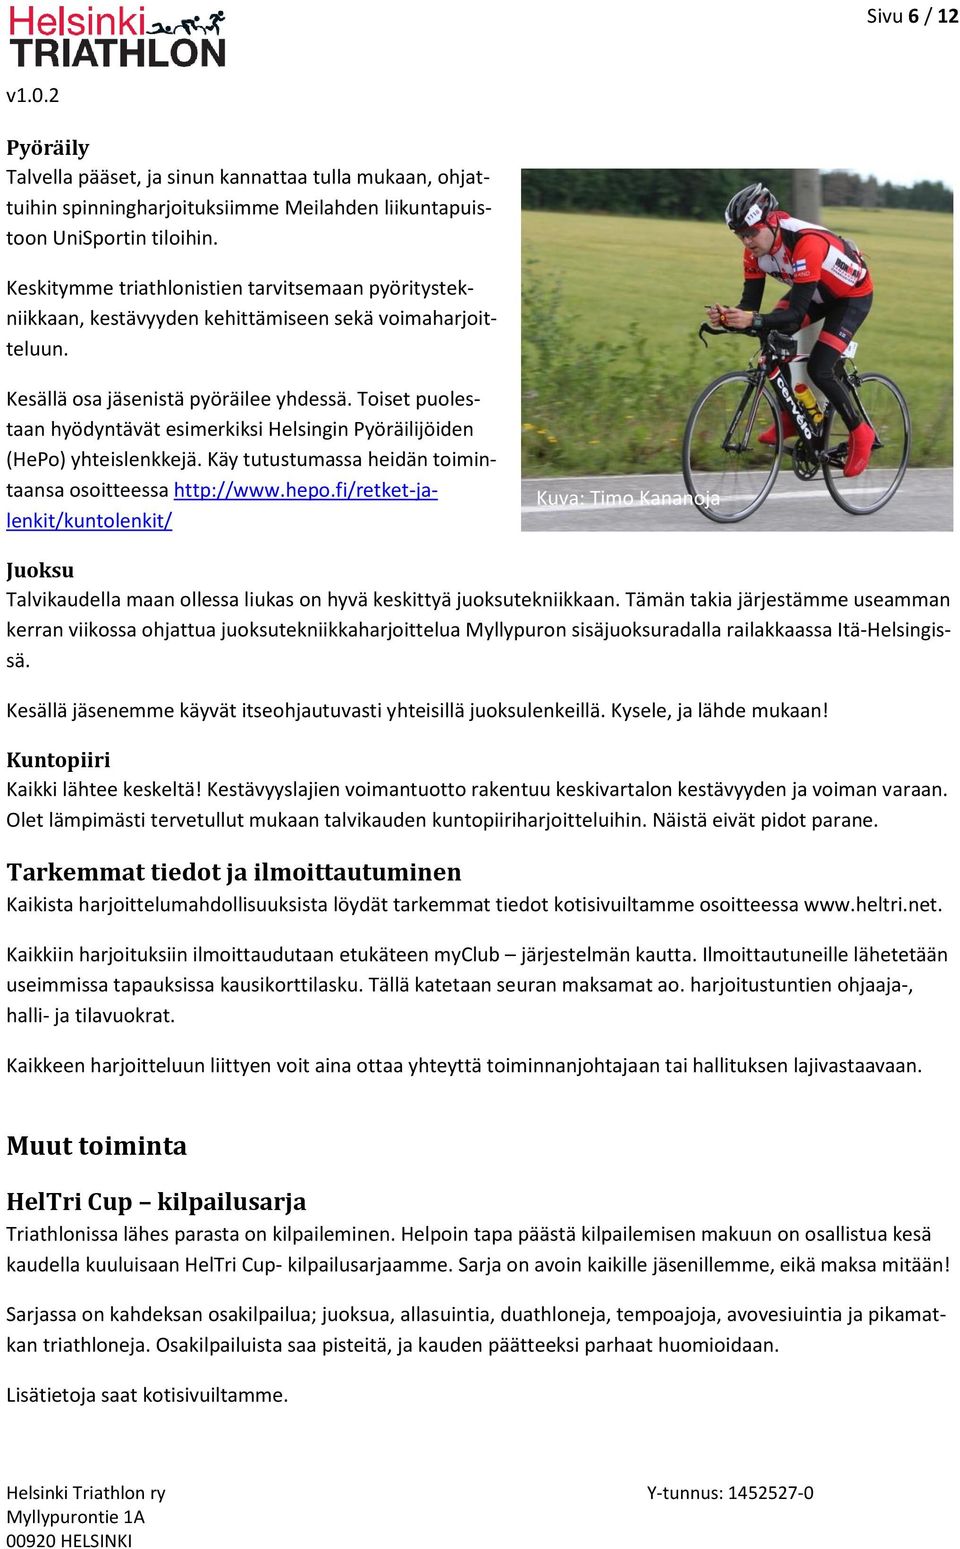 Toiset puolestaan hyödyntävät esimerkiksi Helsingin Pyöräilijöiden (HePo) yhteislenkkejä. Käy tutustumassa heidän toimintaansa osoitteessa http://www.hepo.